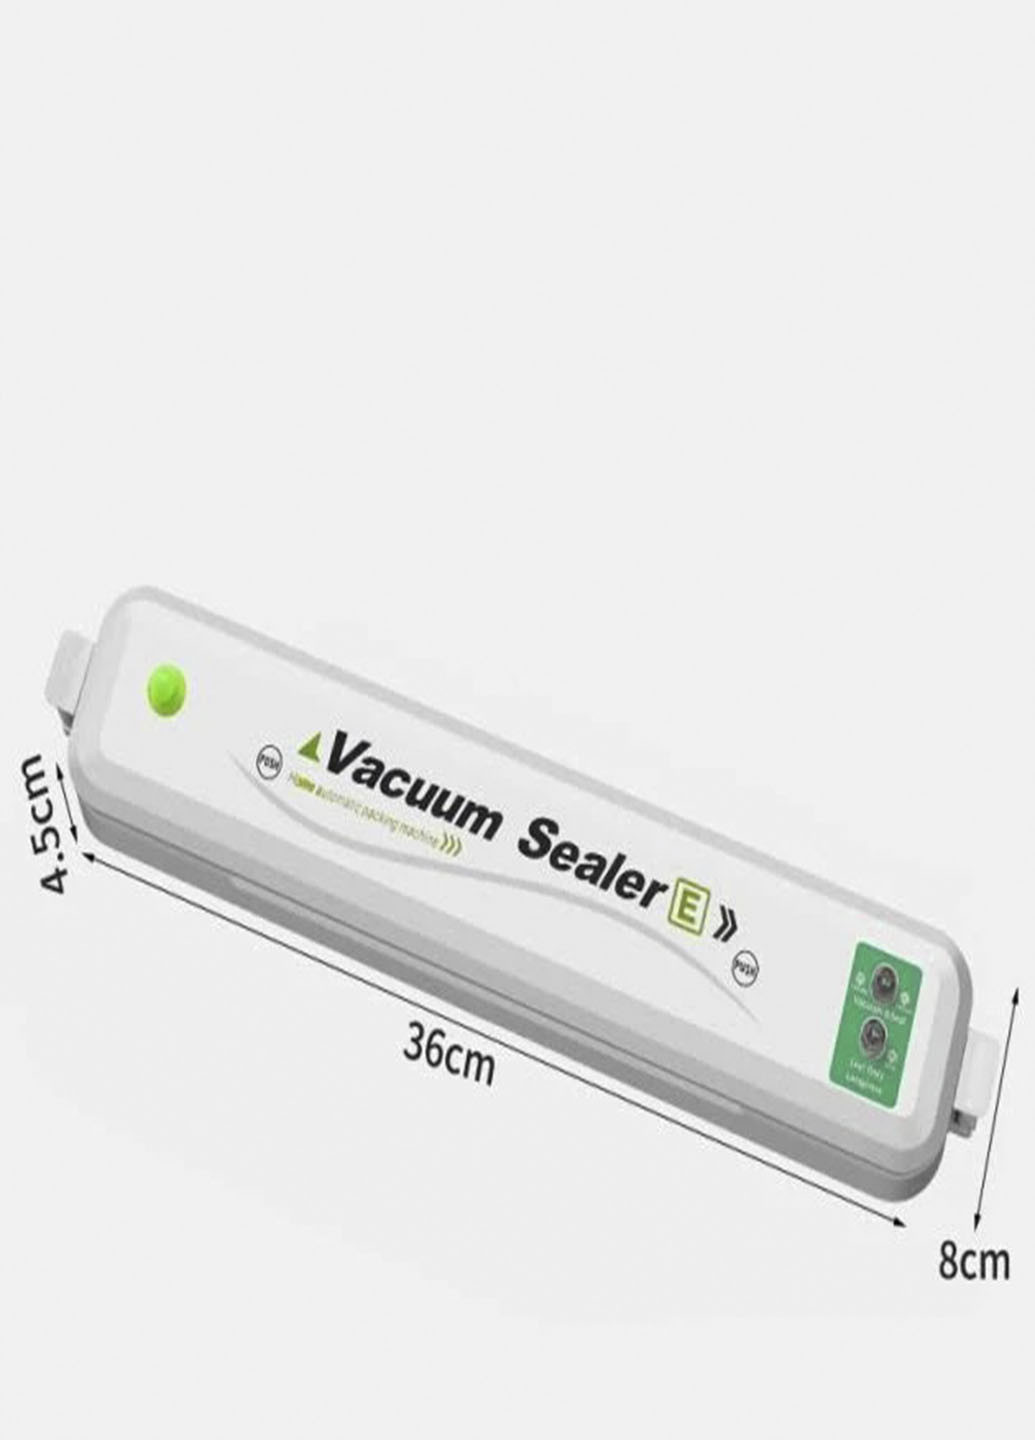 Вакуумный упаковщик для еды Vacuum SeaIer вакууматор для длительного хранения пакеты в комплекте Белый (ST742I23А Rotex (257161407)